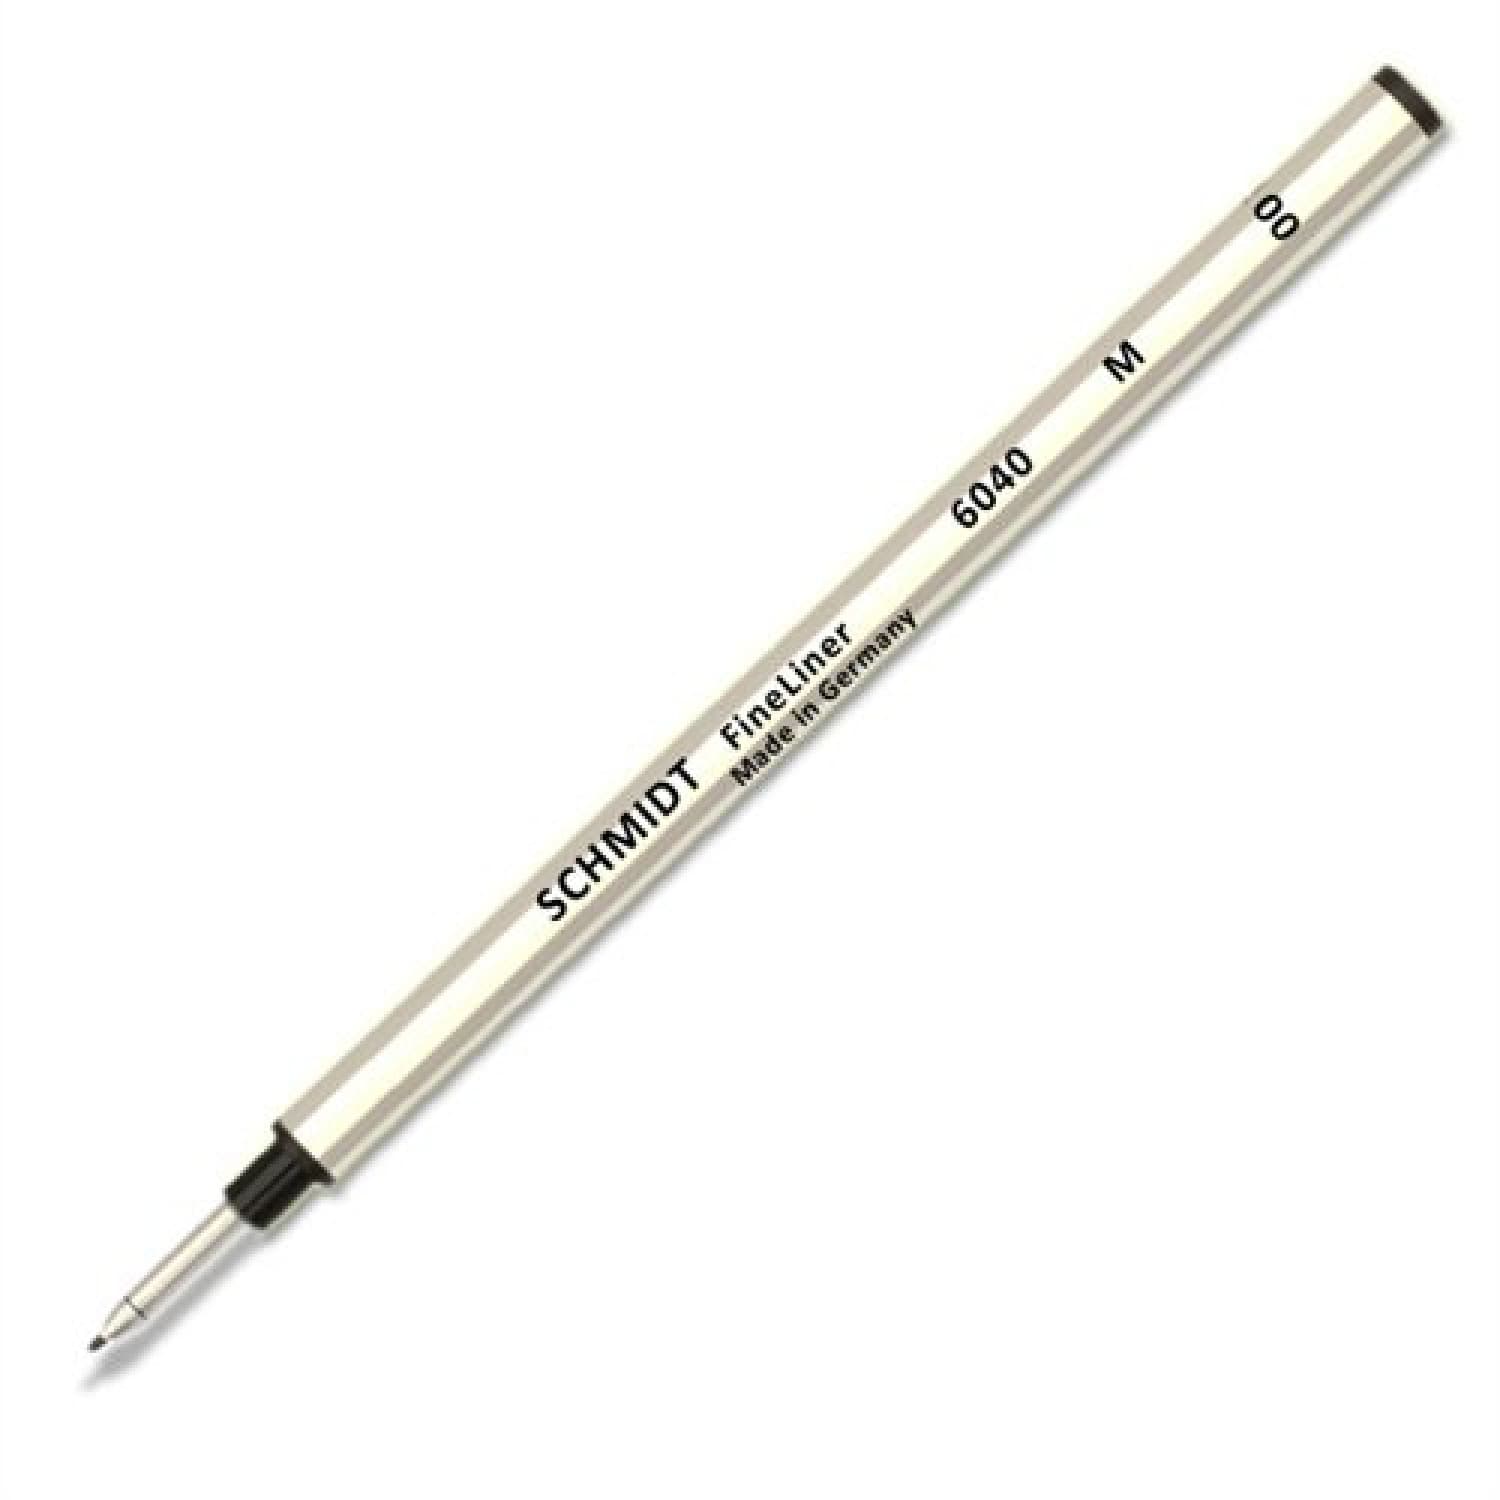  Fineliner Pens